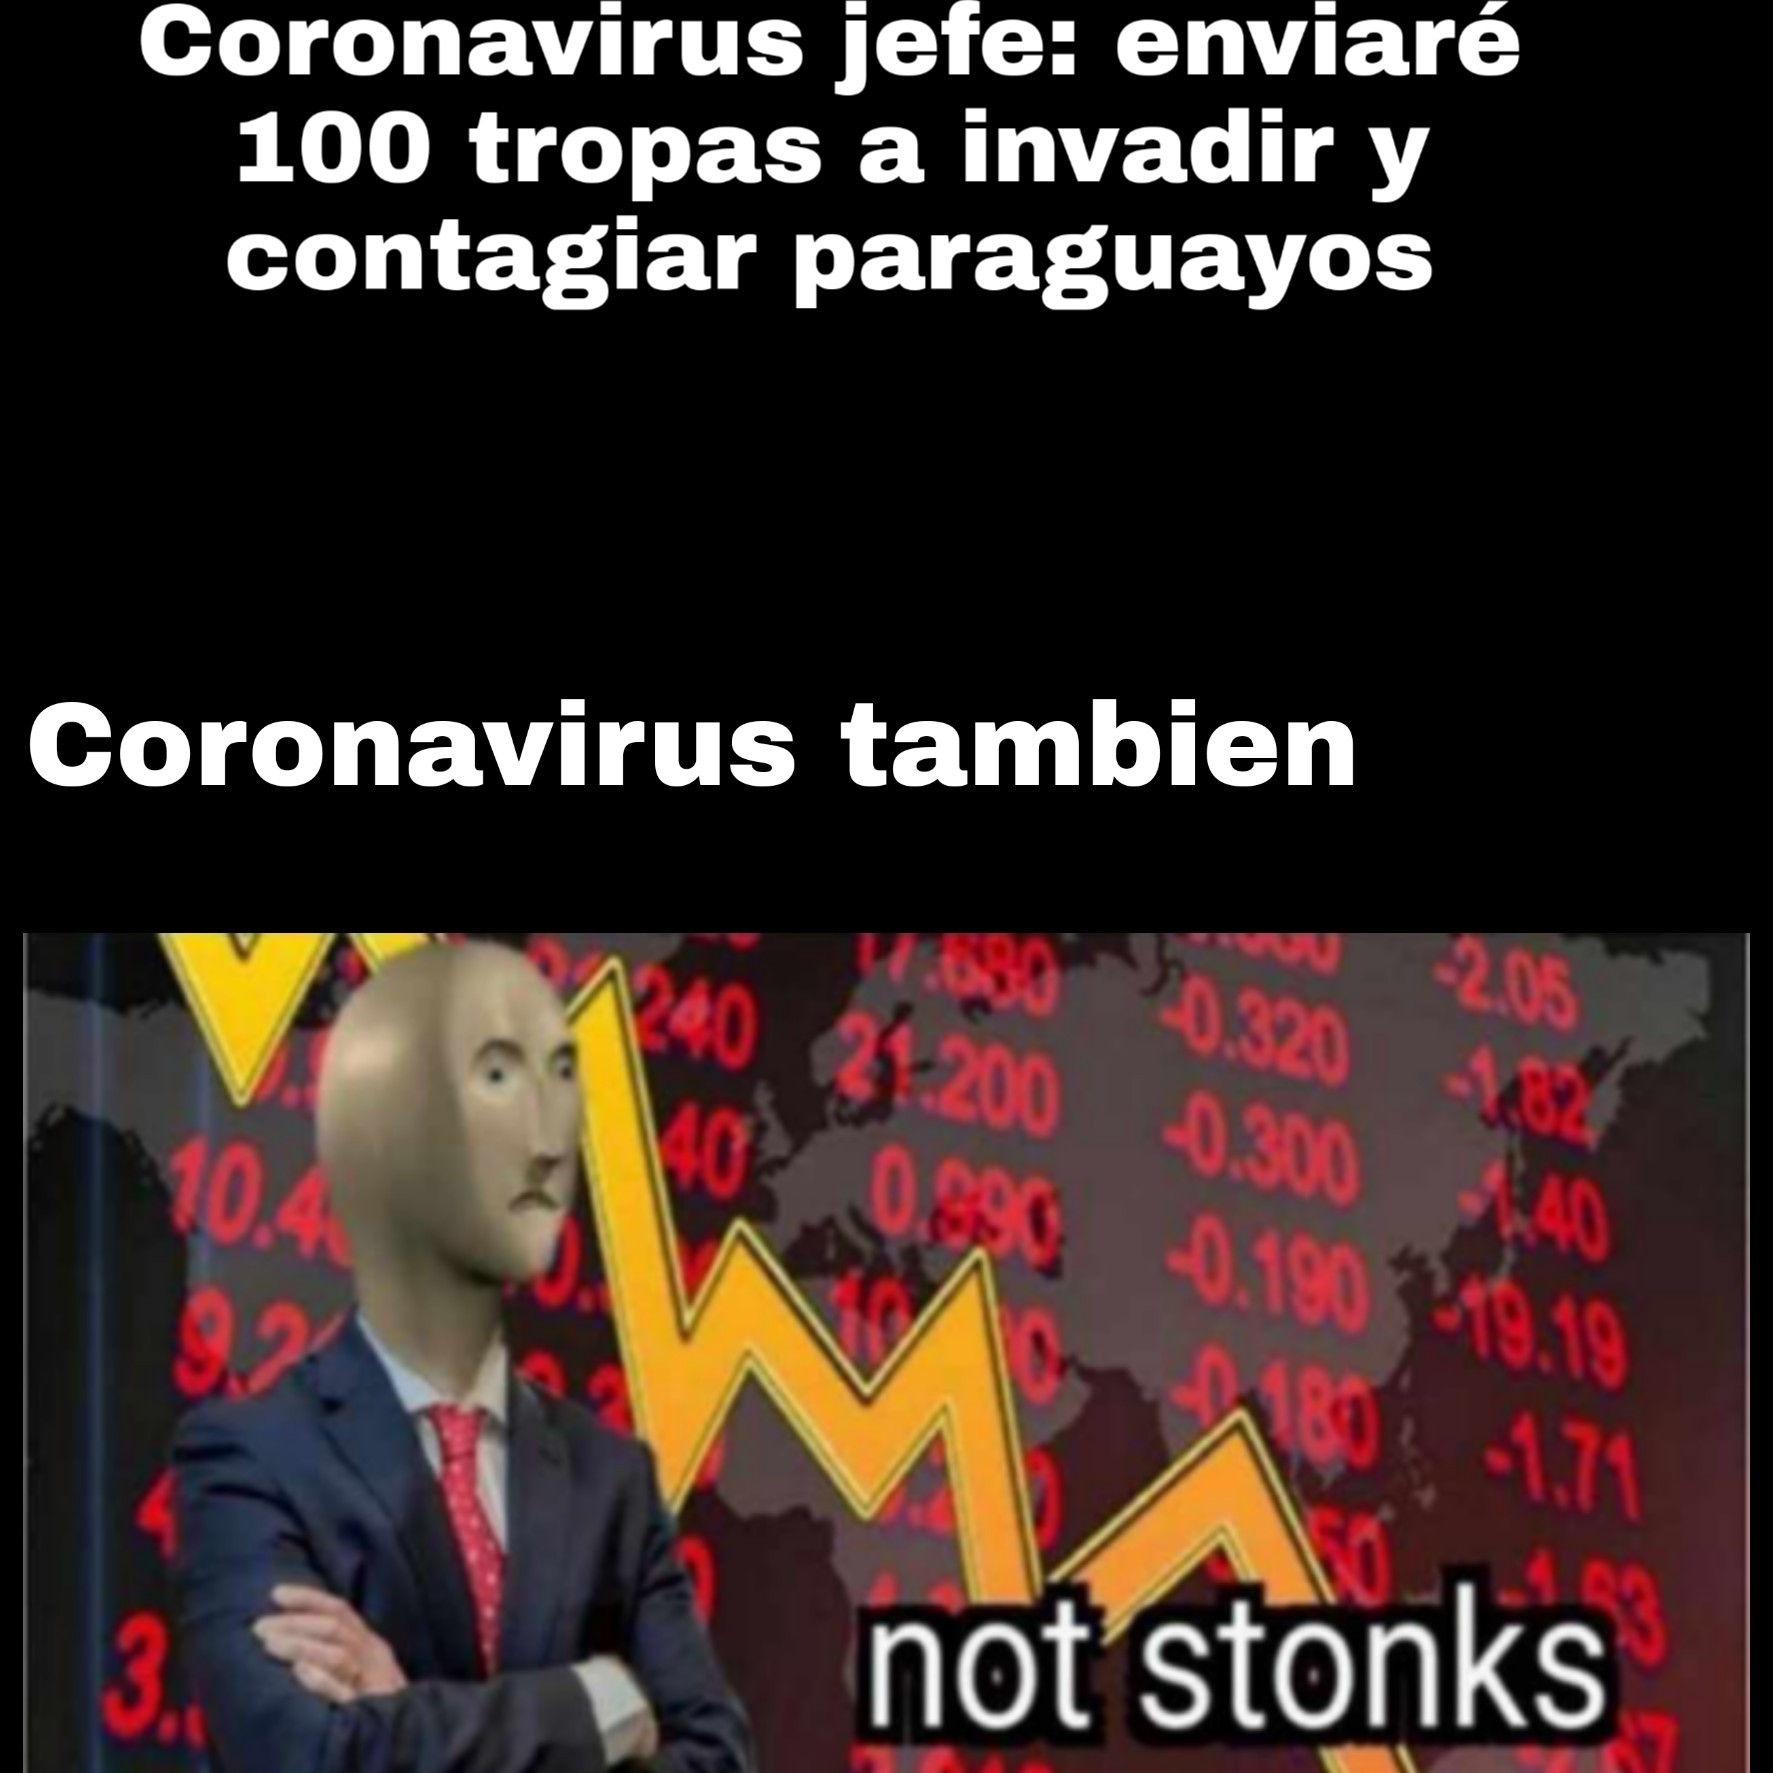 Not stonks - meme